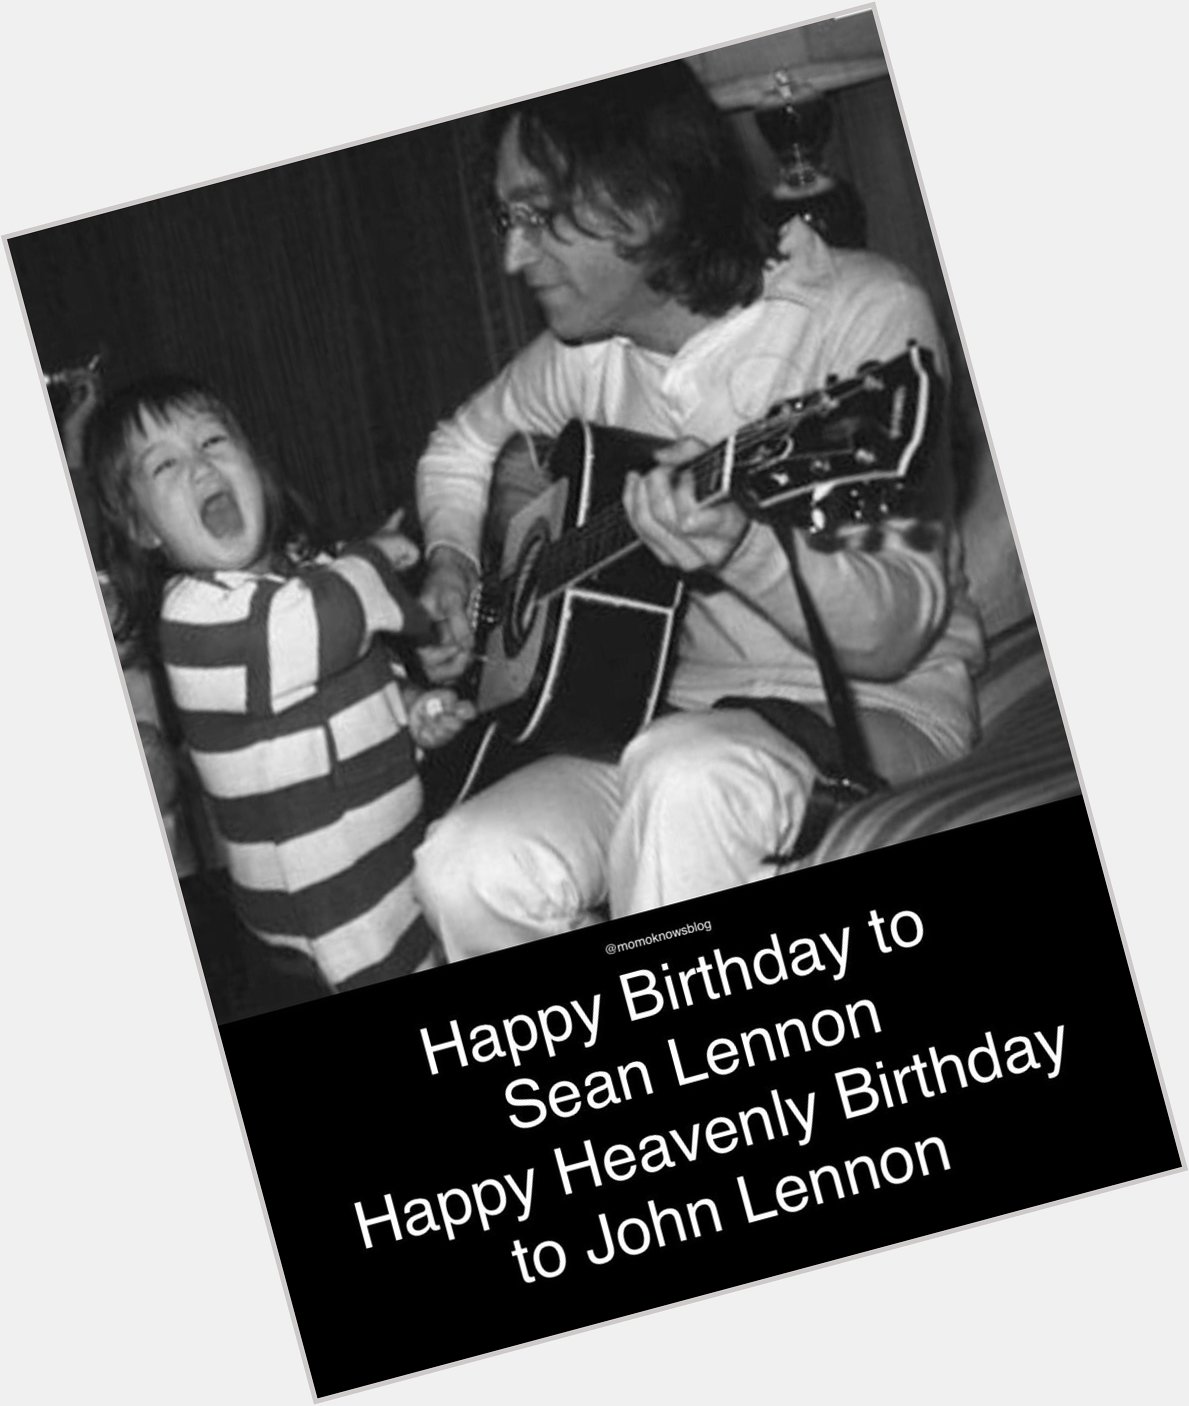 Happy Birthday to Sean Lennon. Happy Heavenly Birthday to John Lennon.  